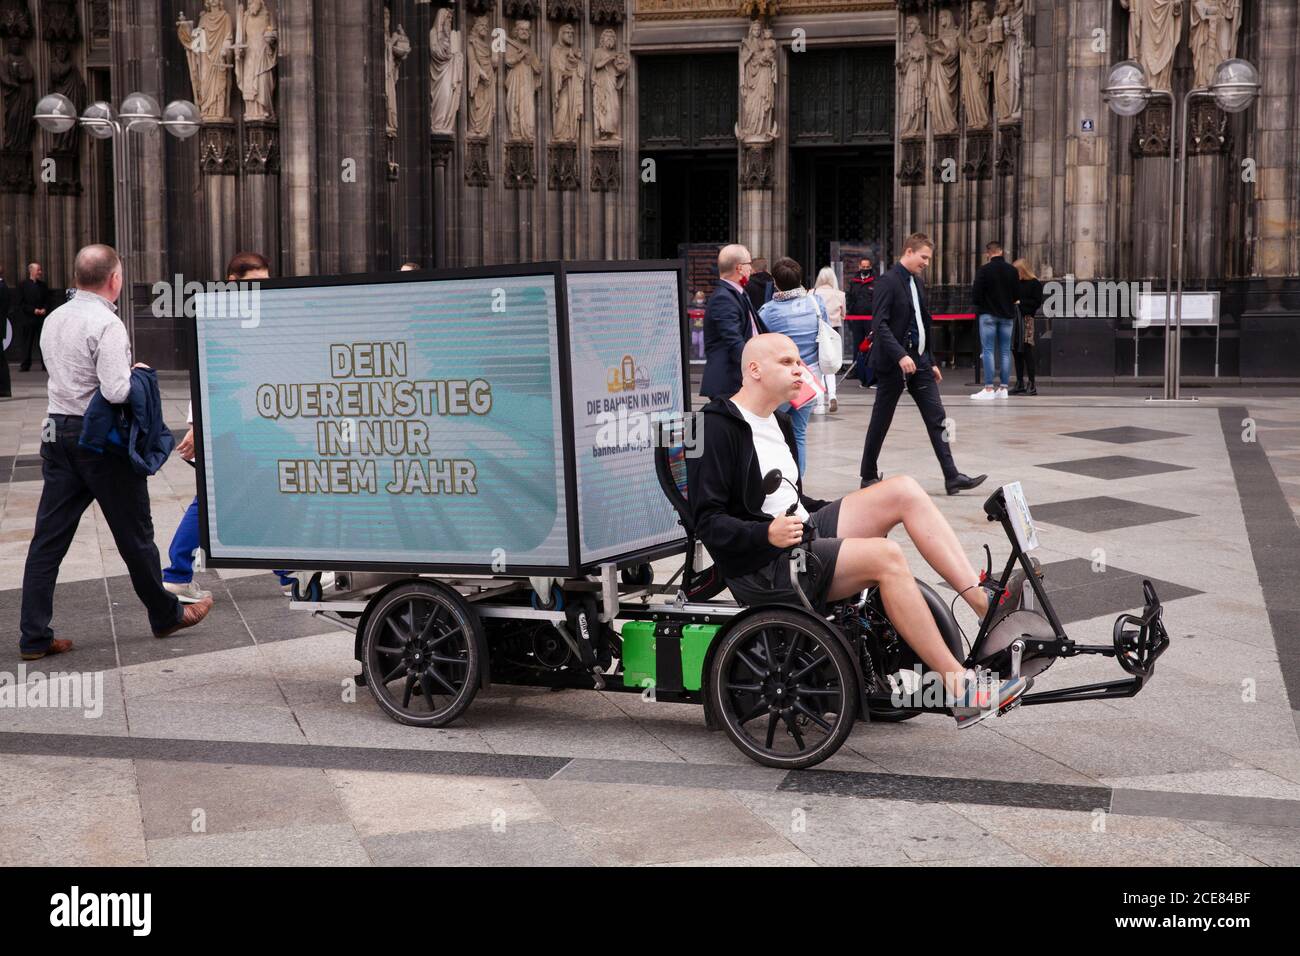 Bicicleta eléctrica (trike) con pantalla digital LED de 360 grados para publicidad móvil al aire libre frente a la catedral, Colonia, Alemania Foto de stock